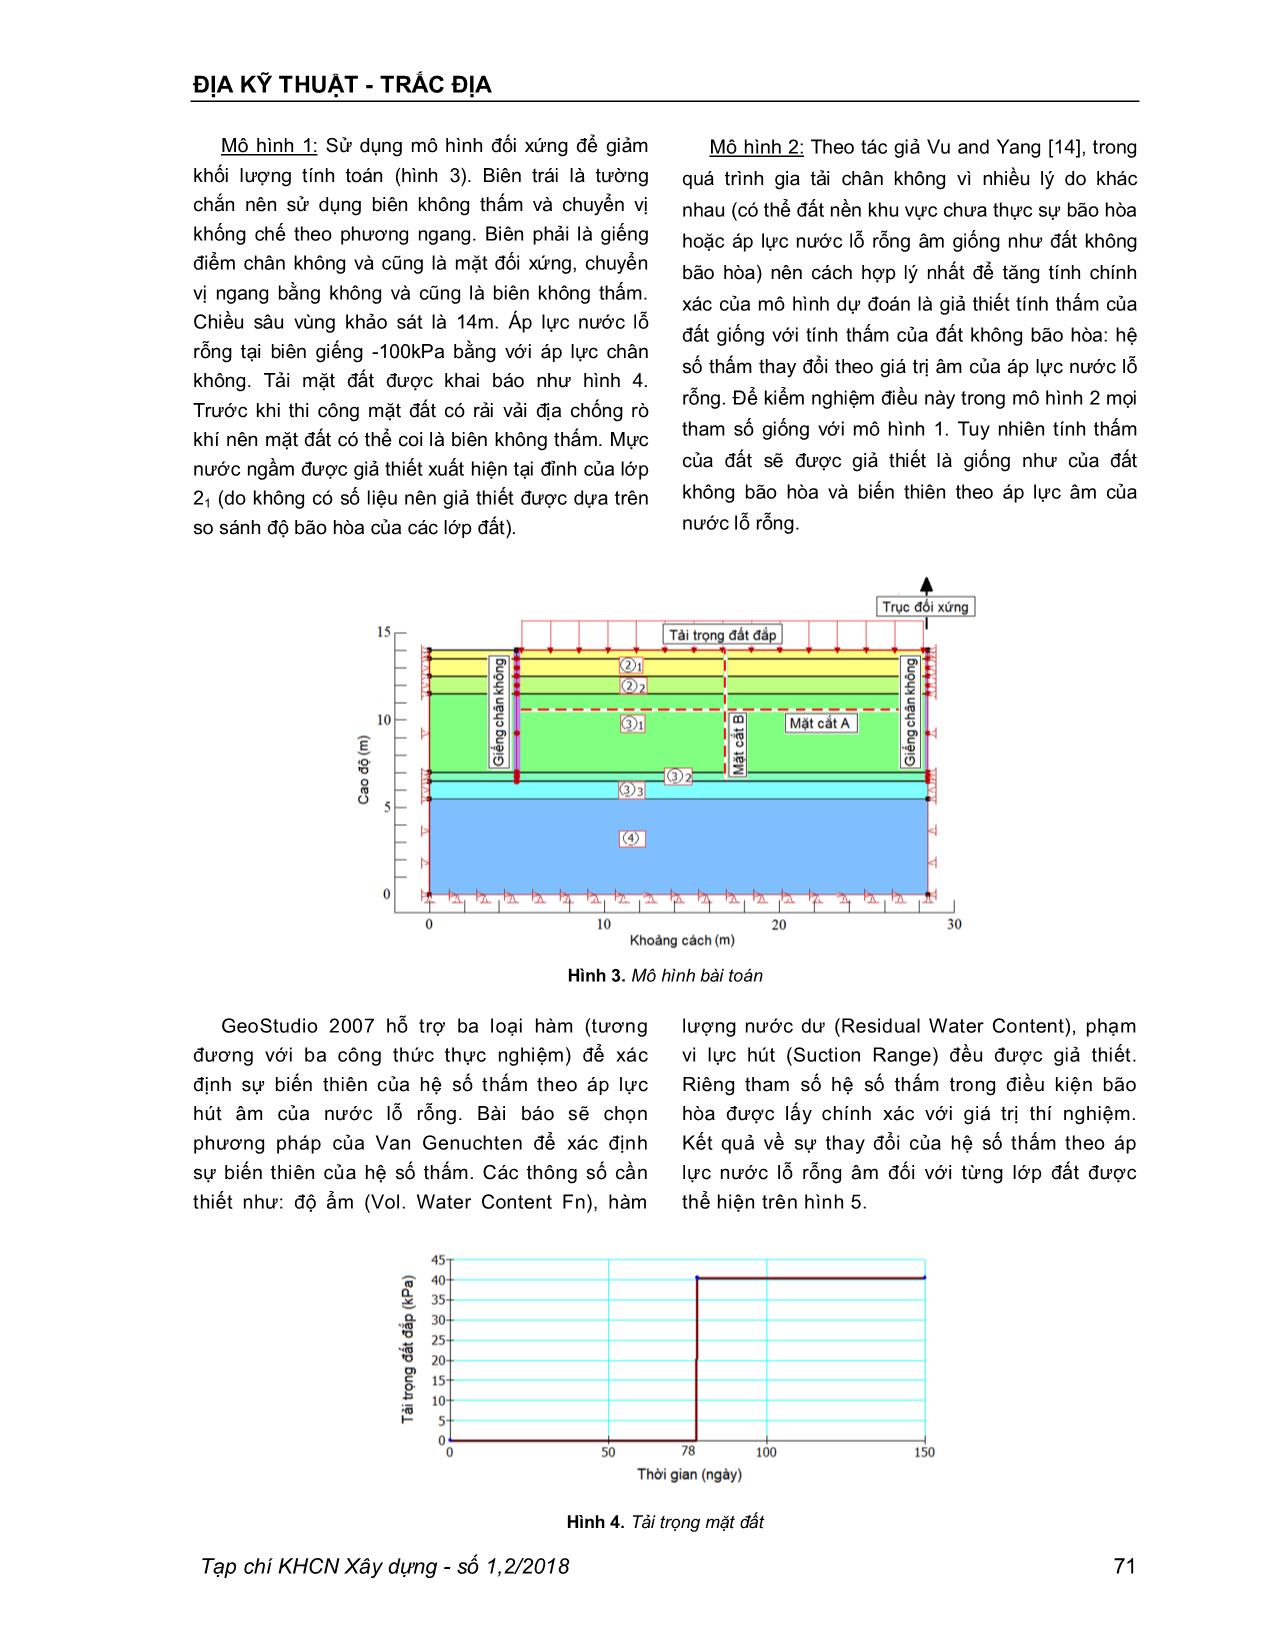 Nghiên cứu mô hình số cho bài toán giếng điểm cố kết chân không trang 4